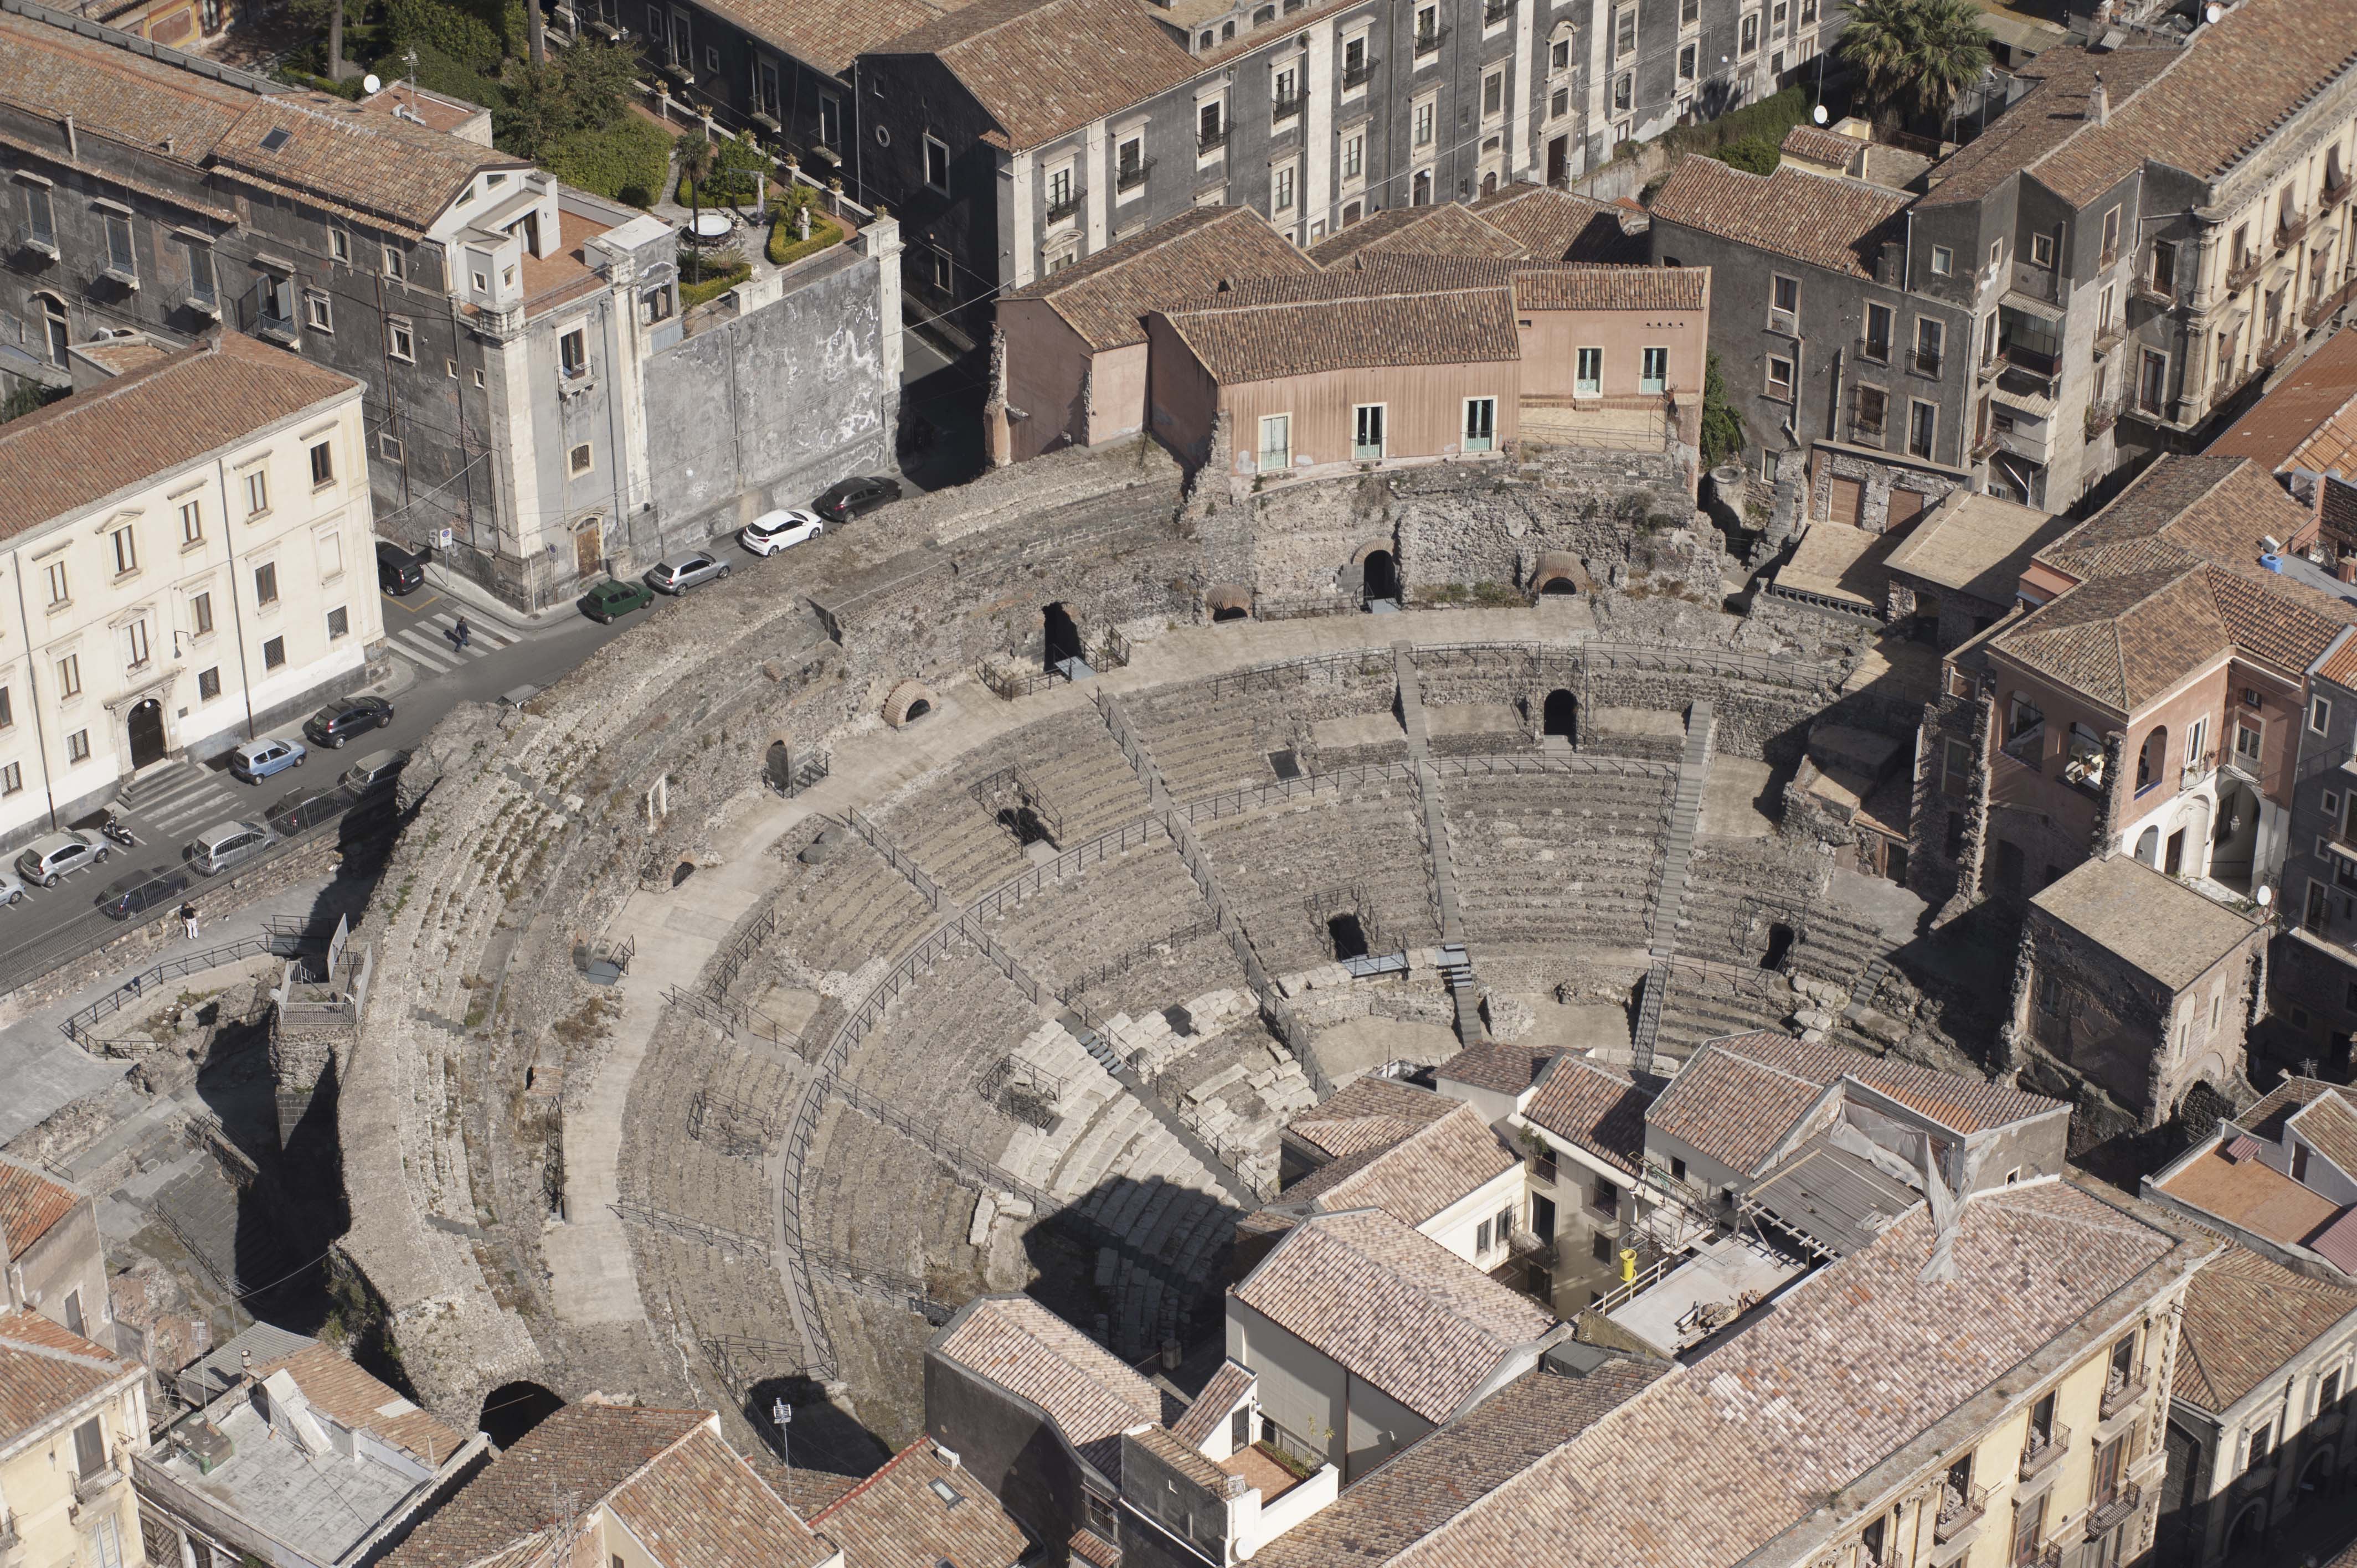 Teatro romano di catania_foto aerea